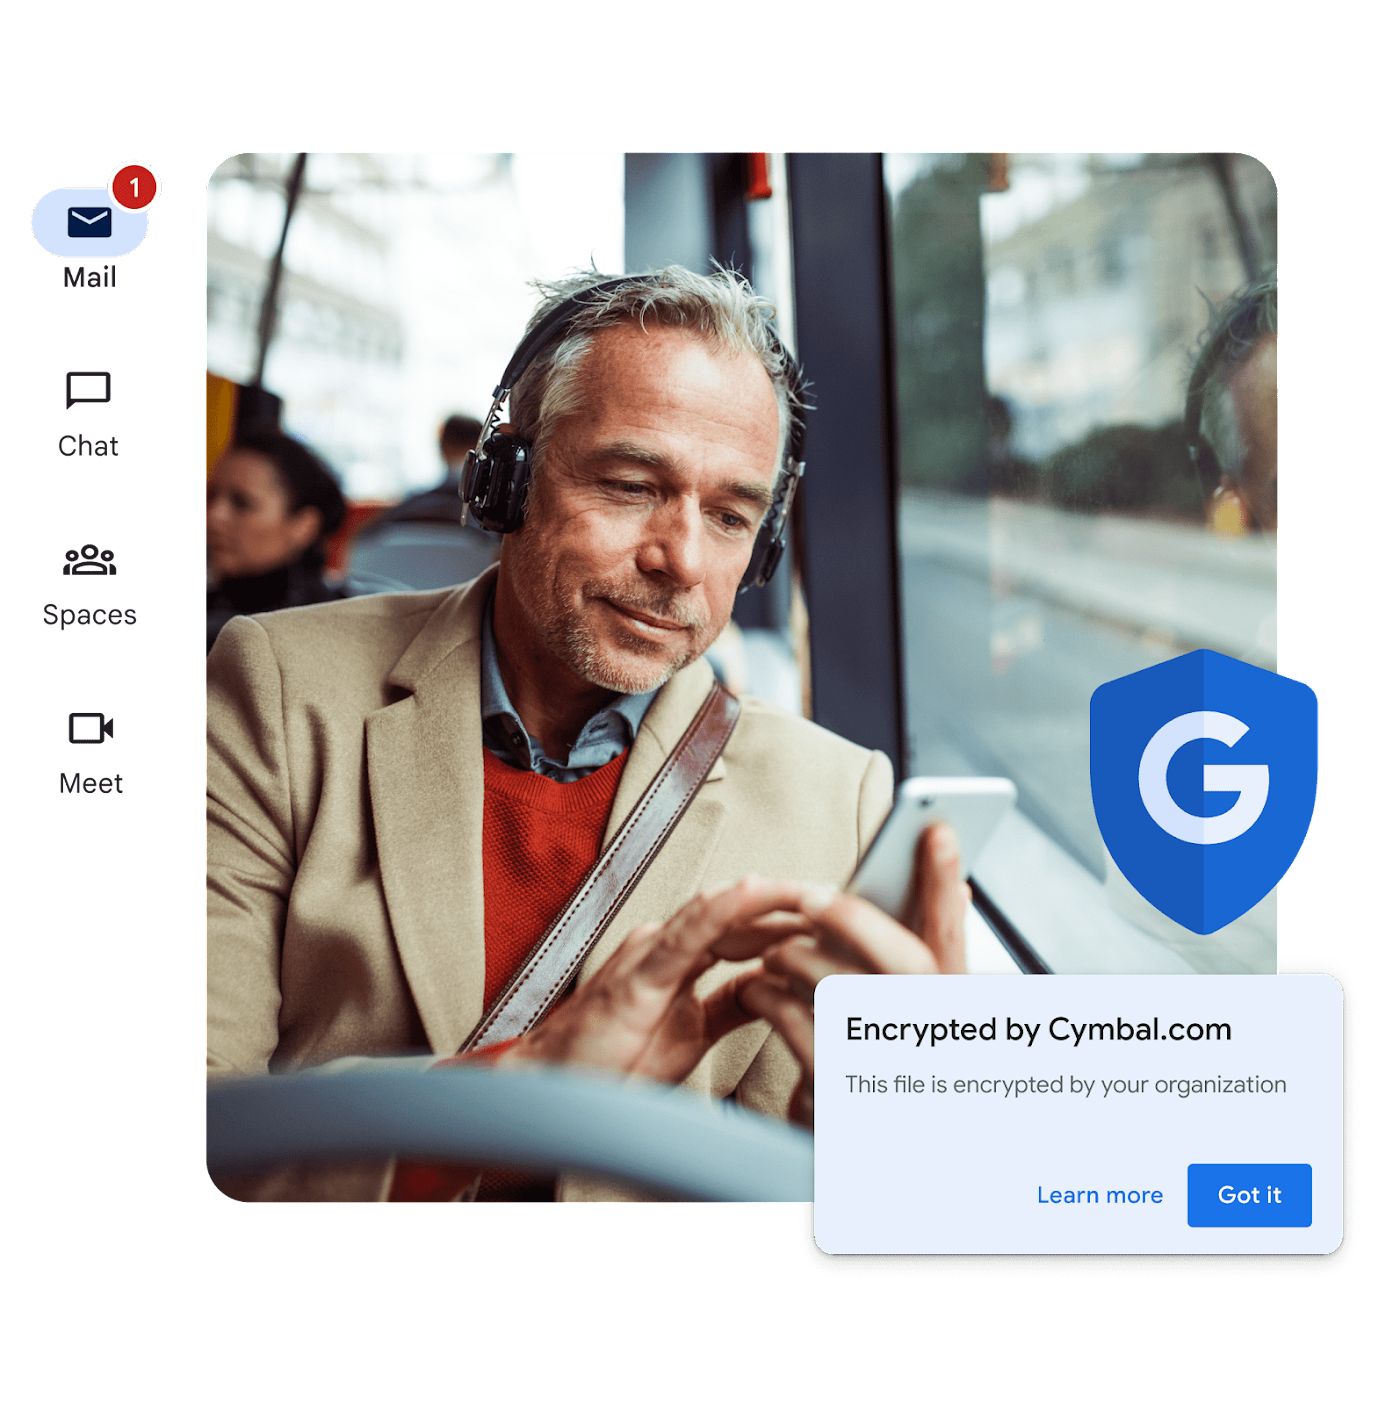 Um viajante regular num autocarro a olhar para o telemóvel. A notificação indica que o email do viajante está encriptado pela respetiva organização.